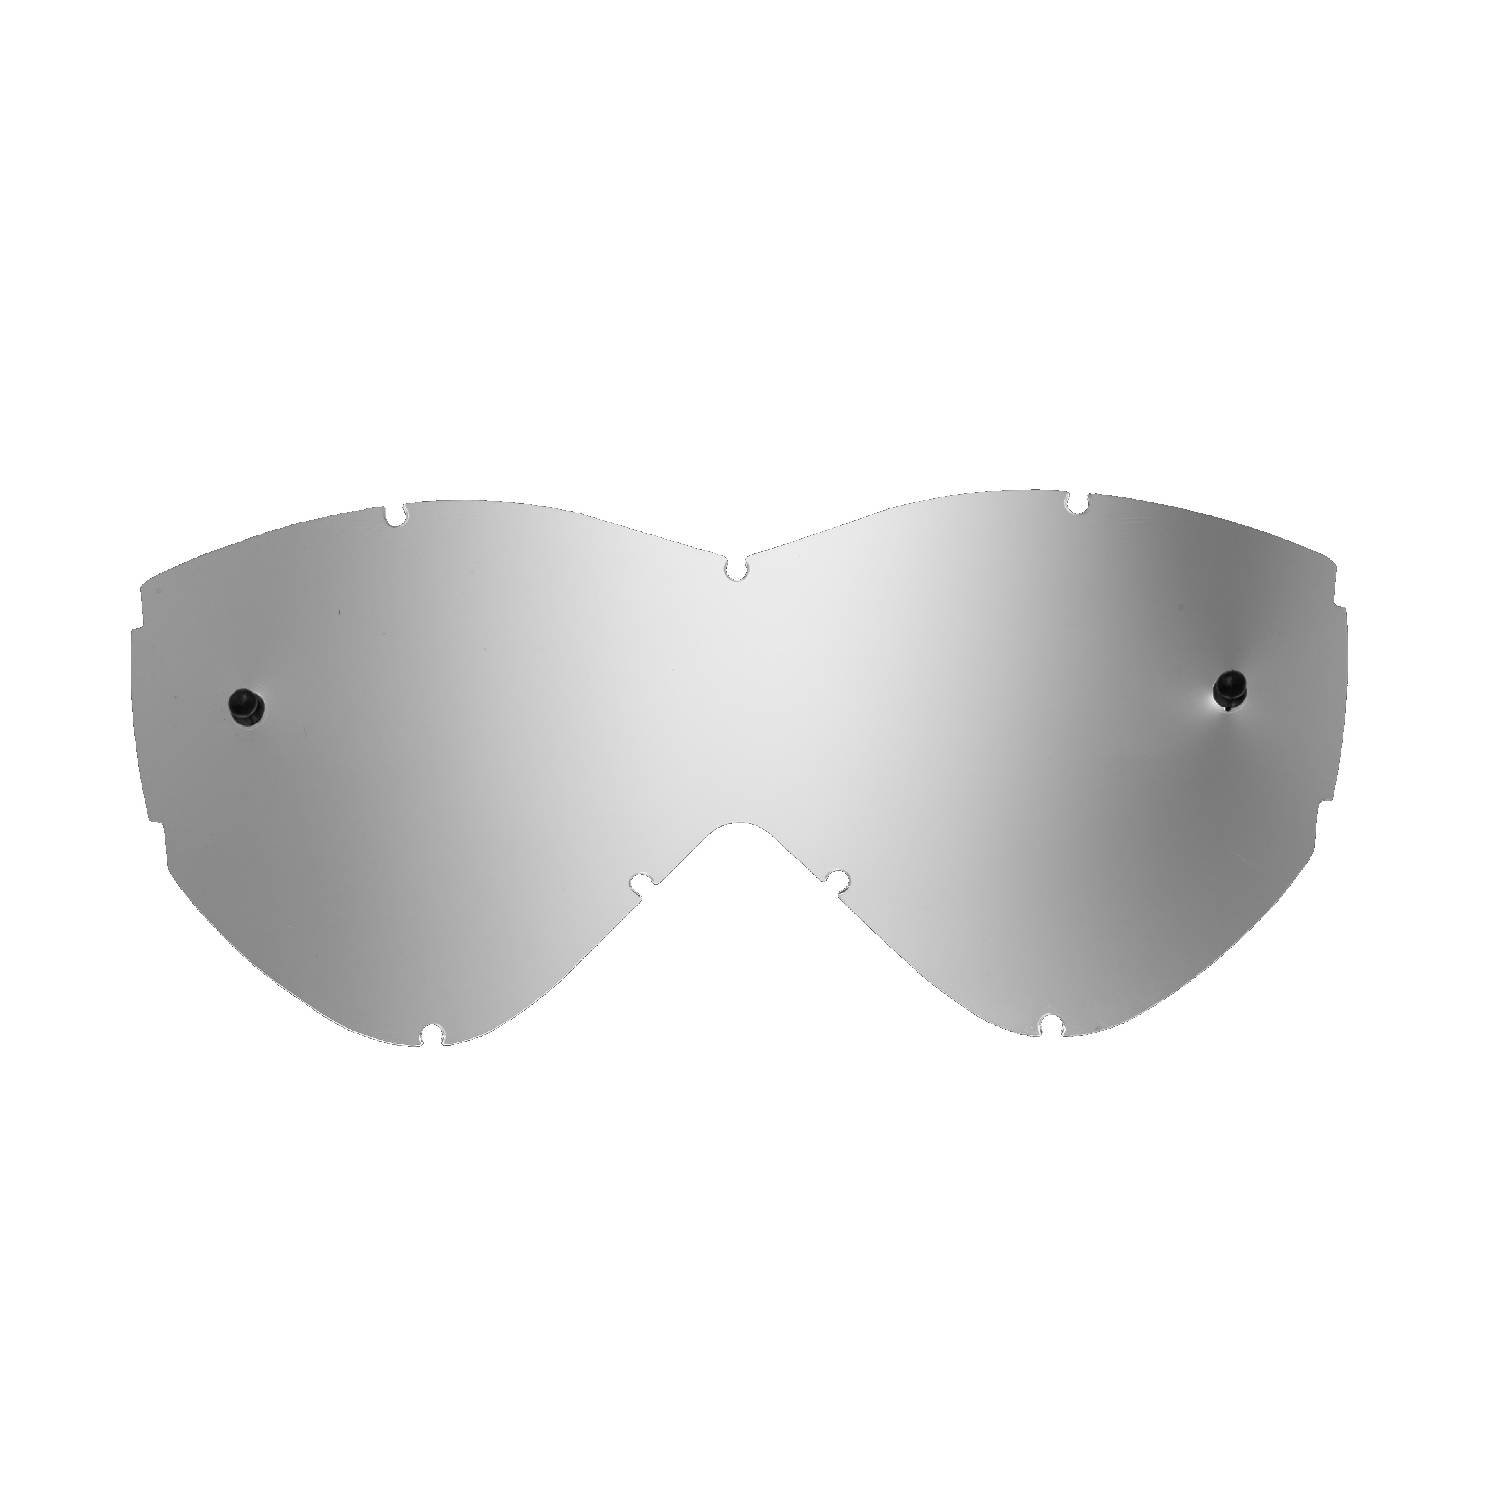 Lente di ricambio argento specchiato compatibile per occhiale/maschera Smith Warp